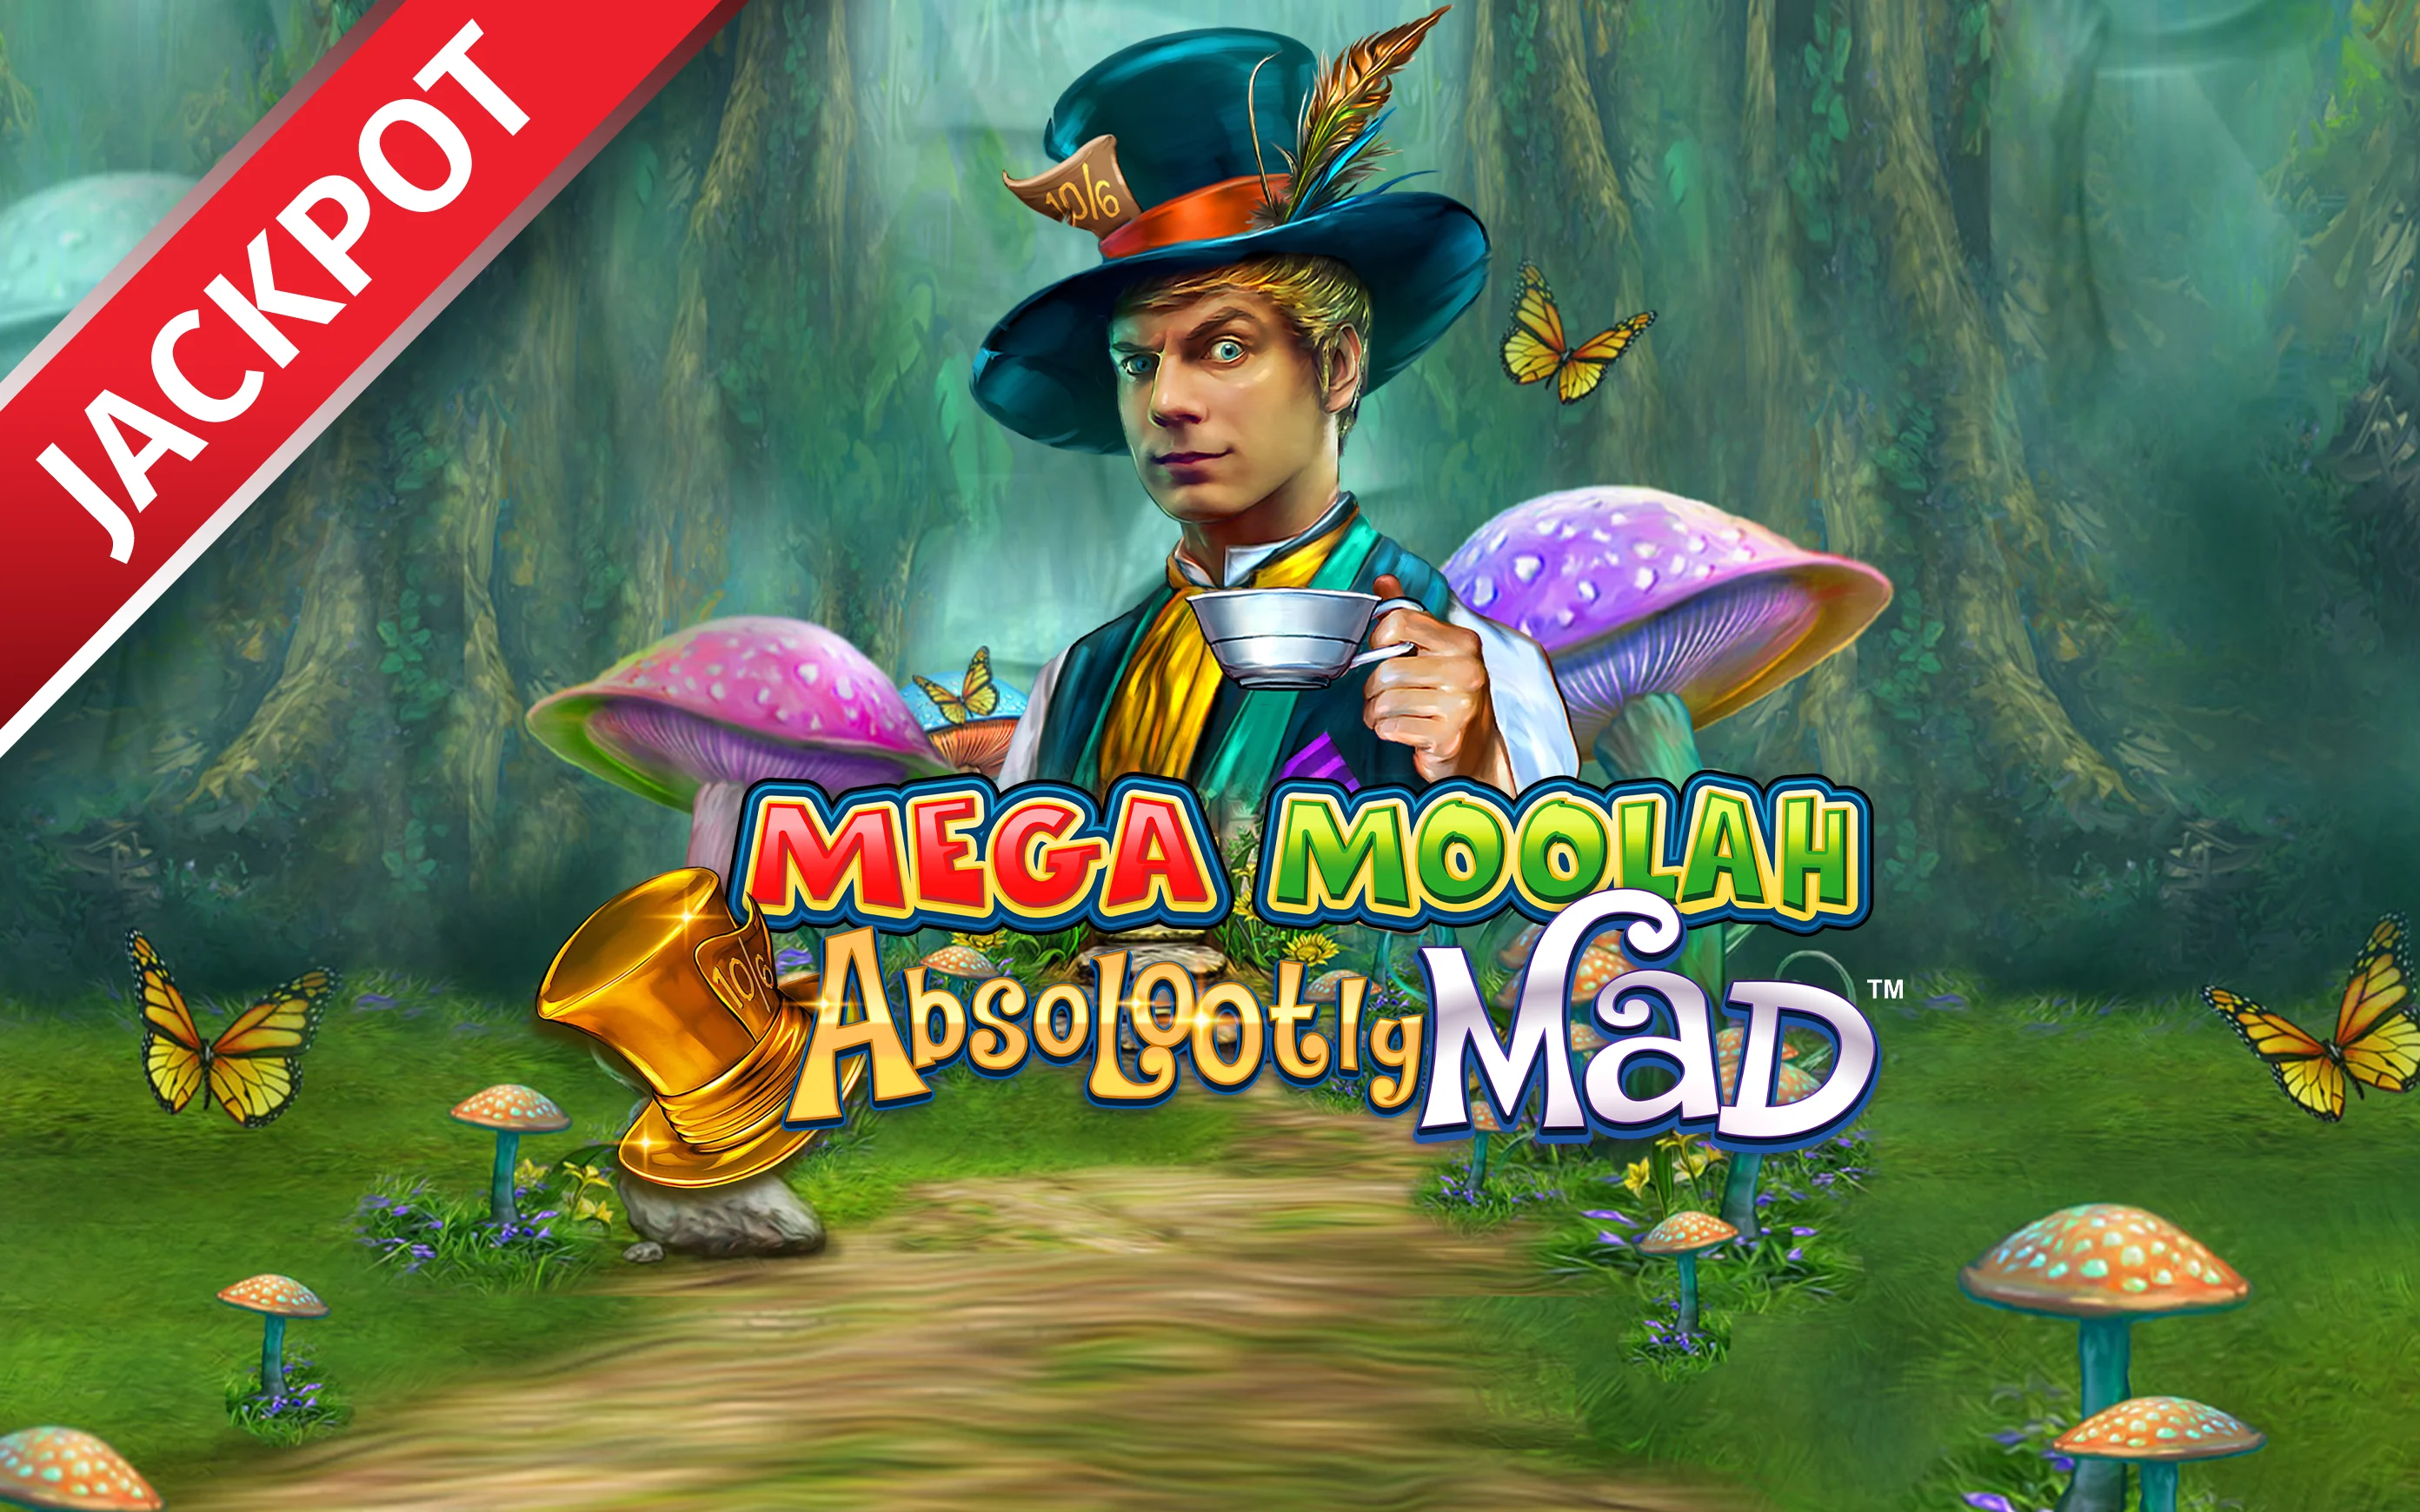 Spielen Sie Absolootly Mad Mega Moolah™ auf Starcasino.be-Online-Casino